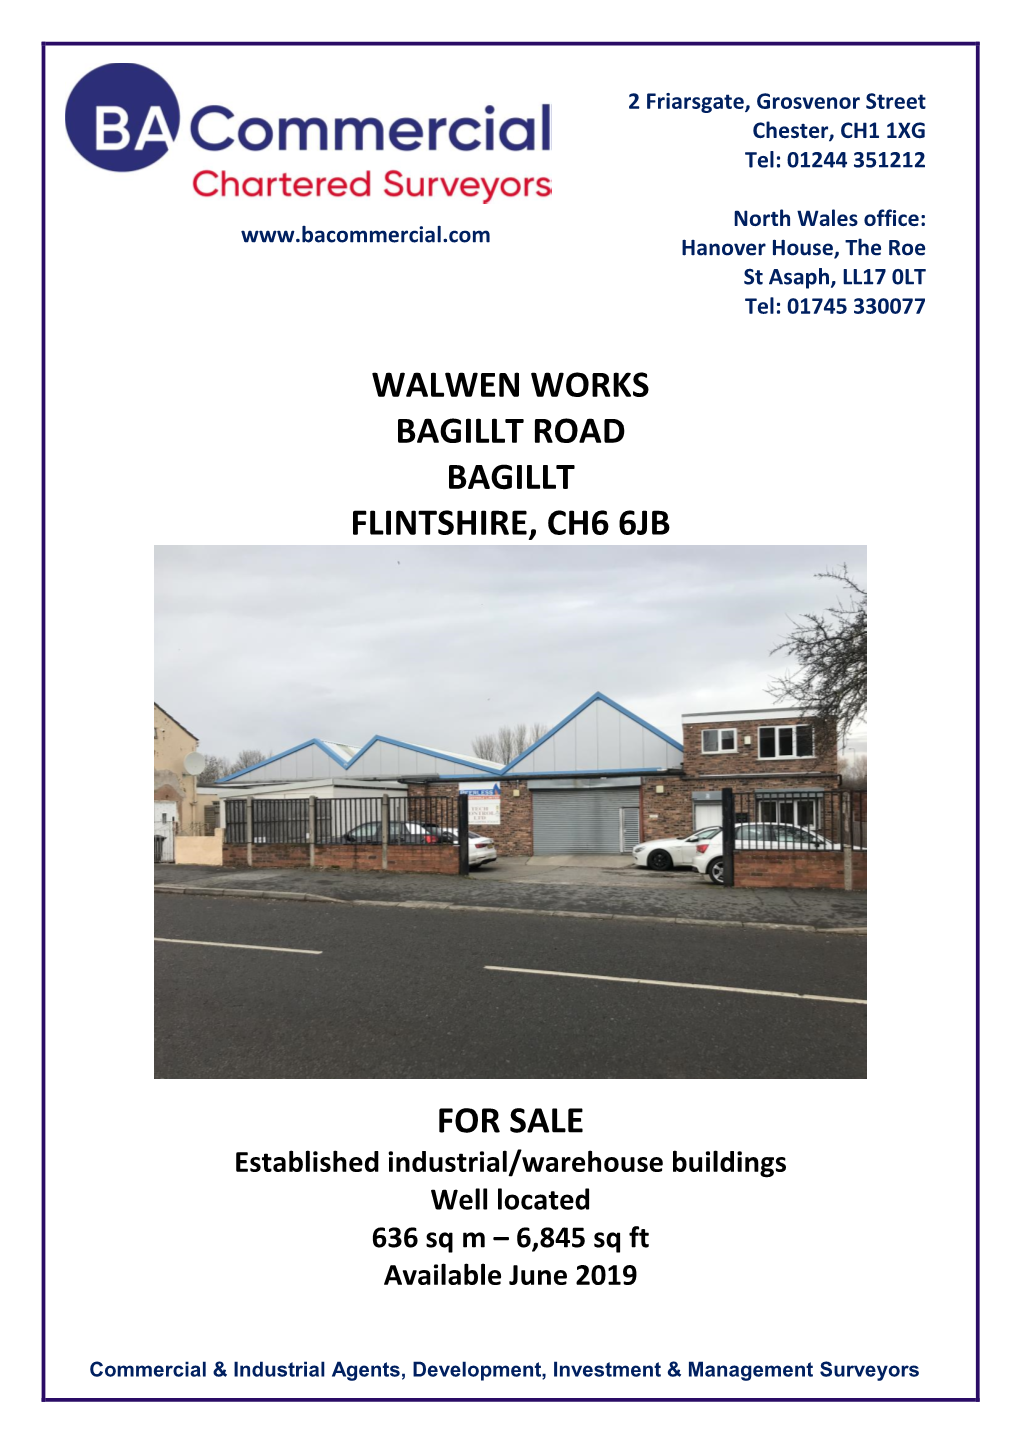 Walwen Works Bagillt Road Bagillt Flintshire, Ch6 6Jb